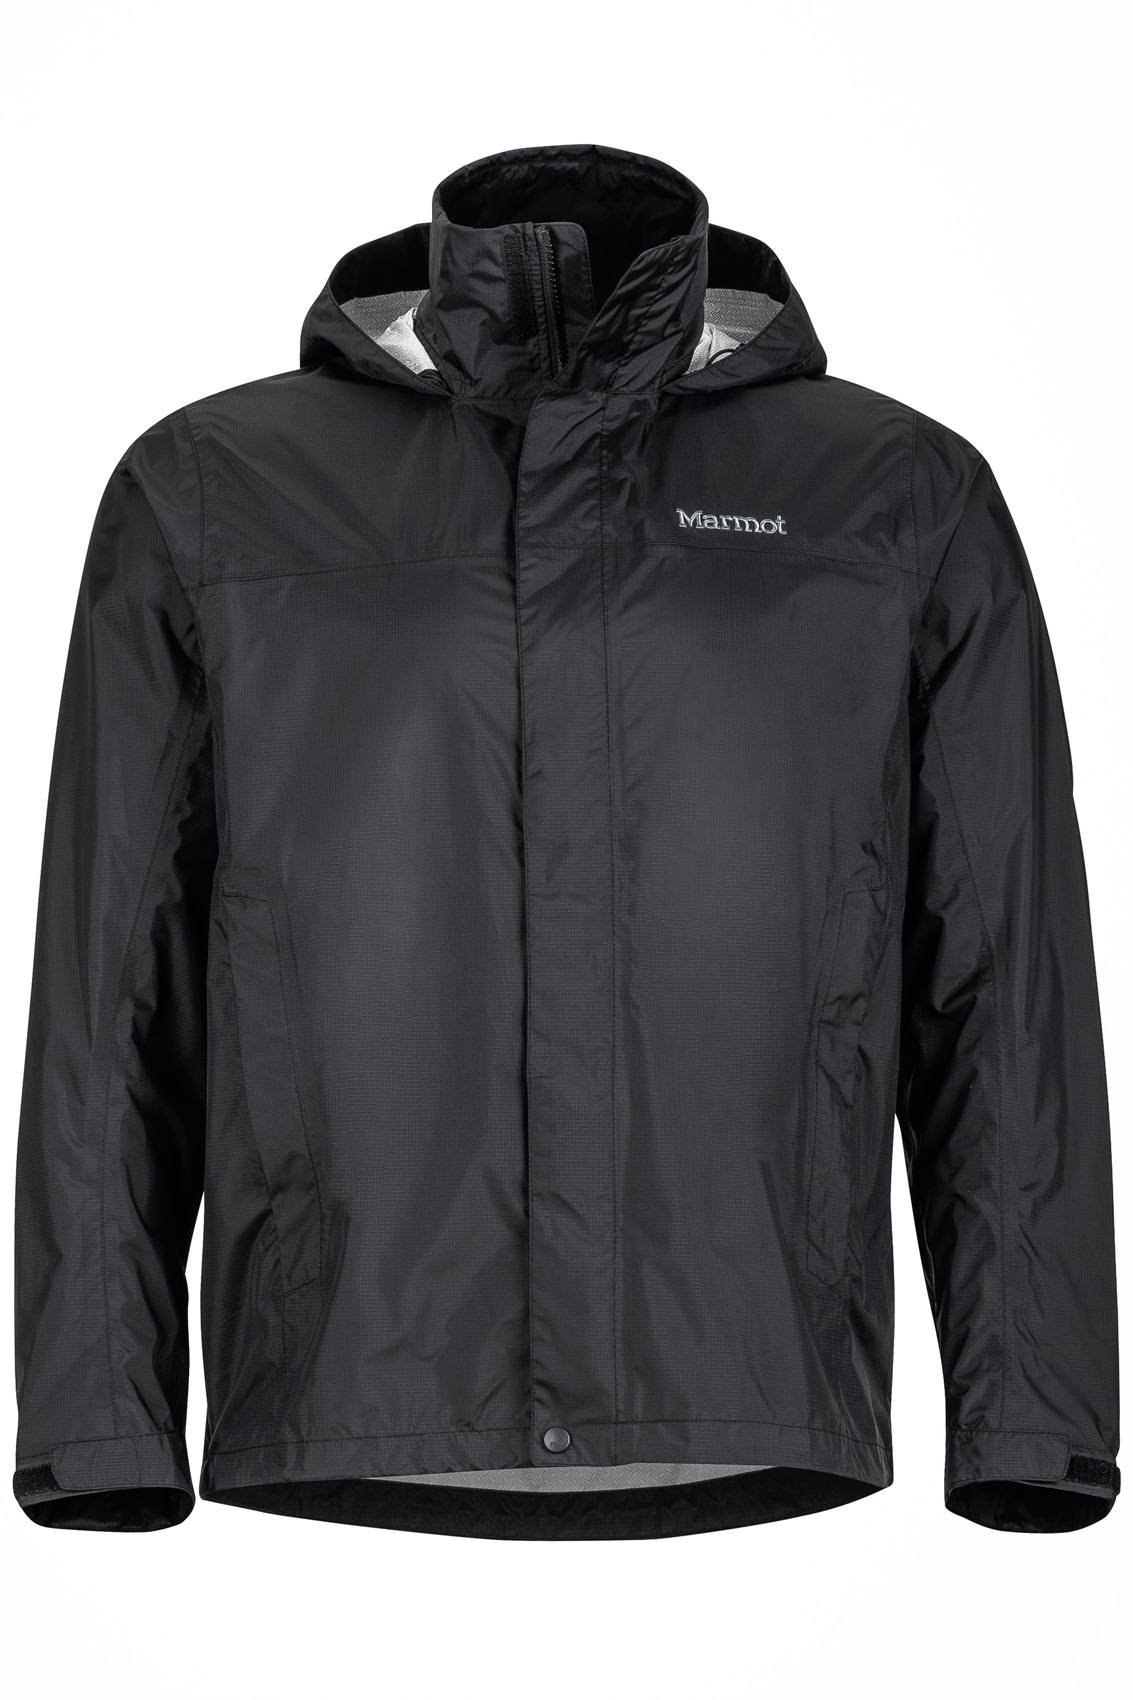 Marmot Precip jacket | Scandinavian Outdoor